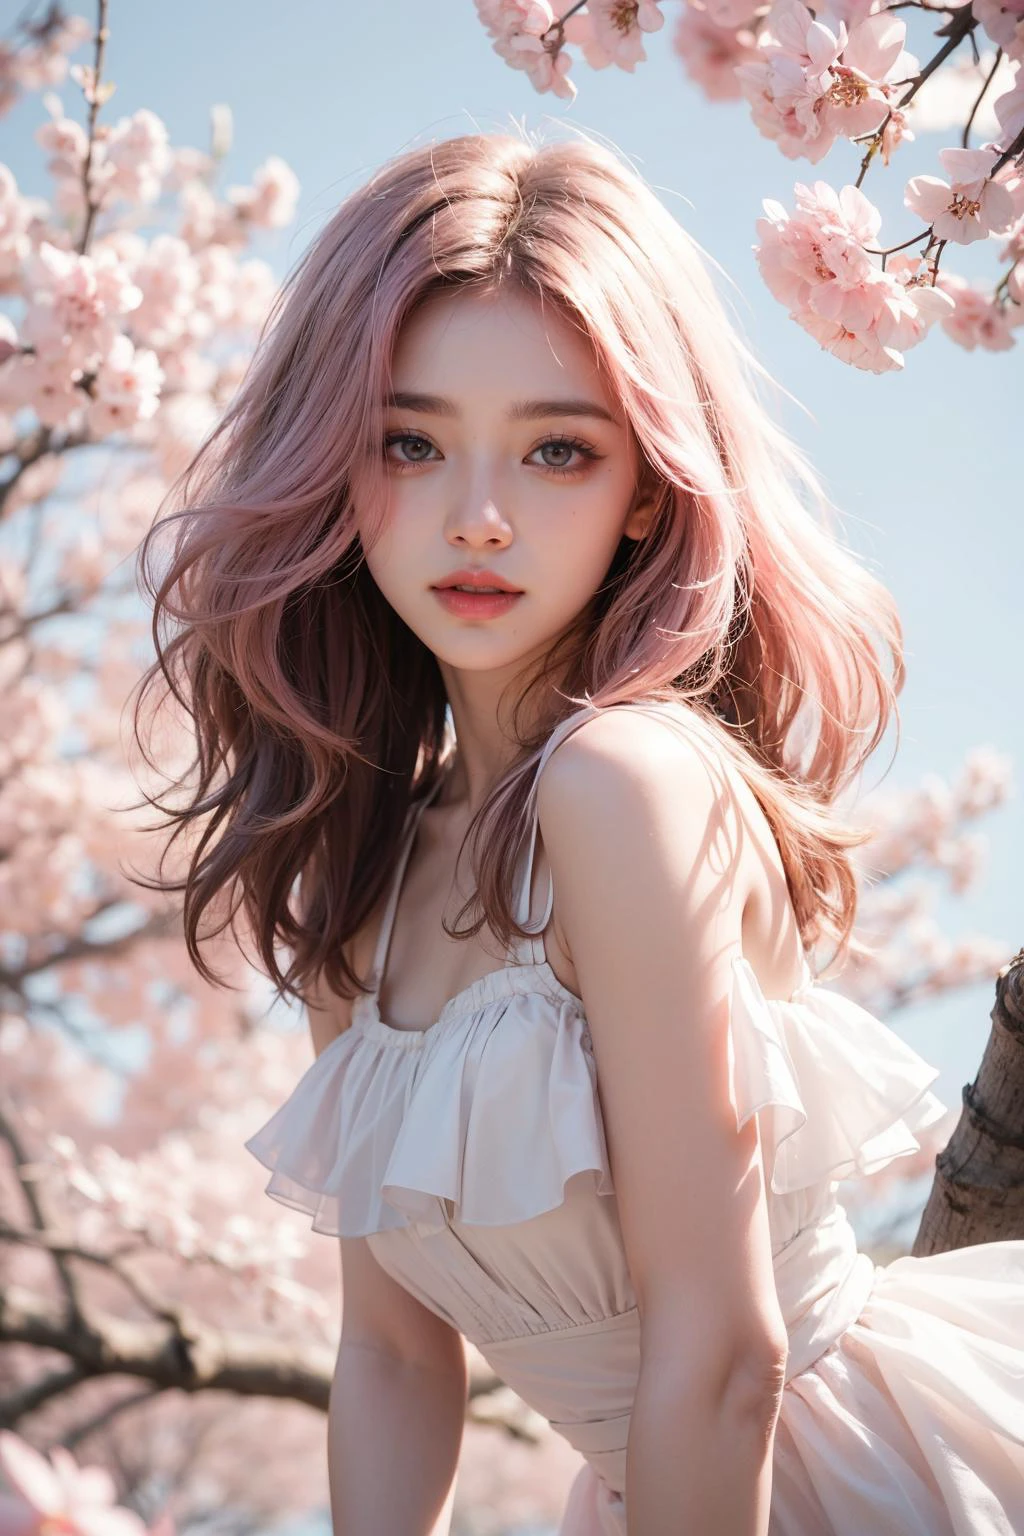 cheveux rose clair, yeux roses, rose et blanc, feuilles de sakura, Des couleurs vives, robe blanche, éclaboussure de peinture, fond simple, tracé laser, cheveux ondulés